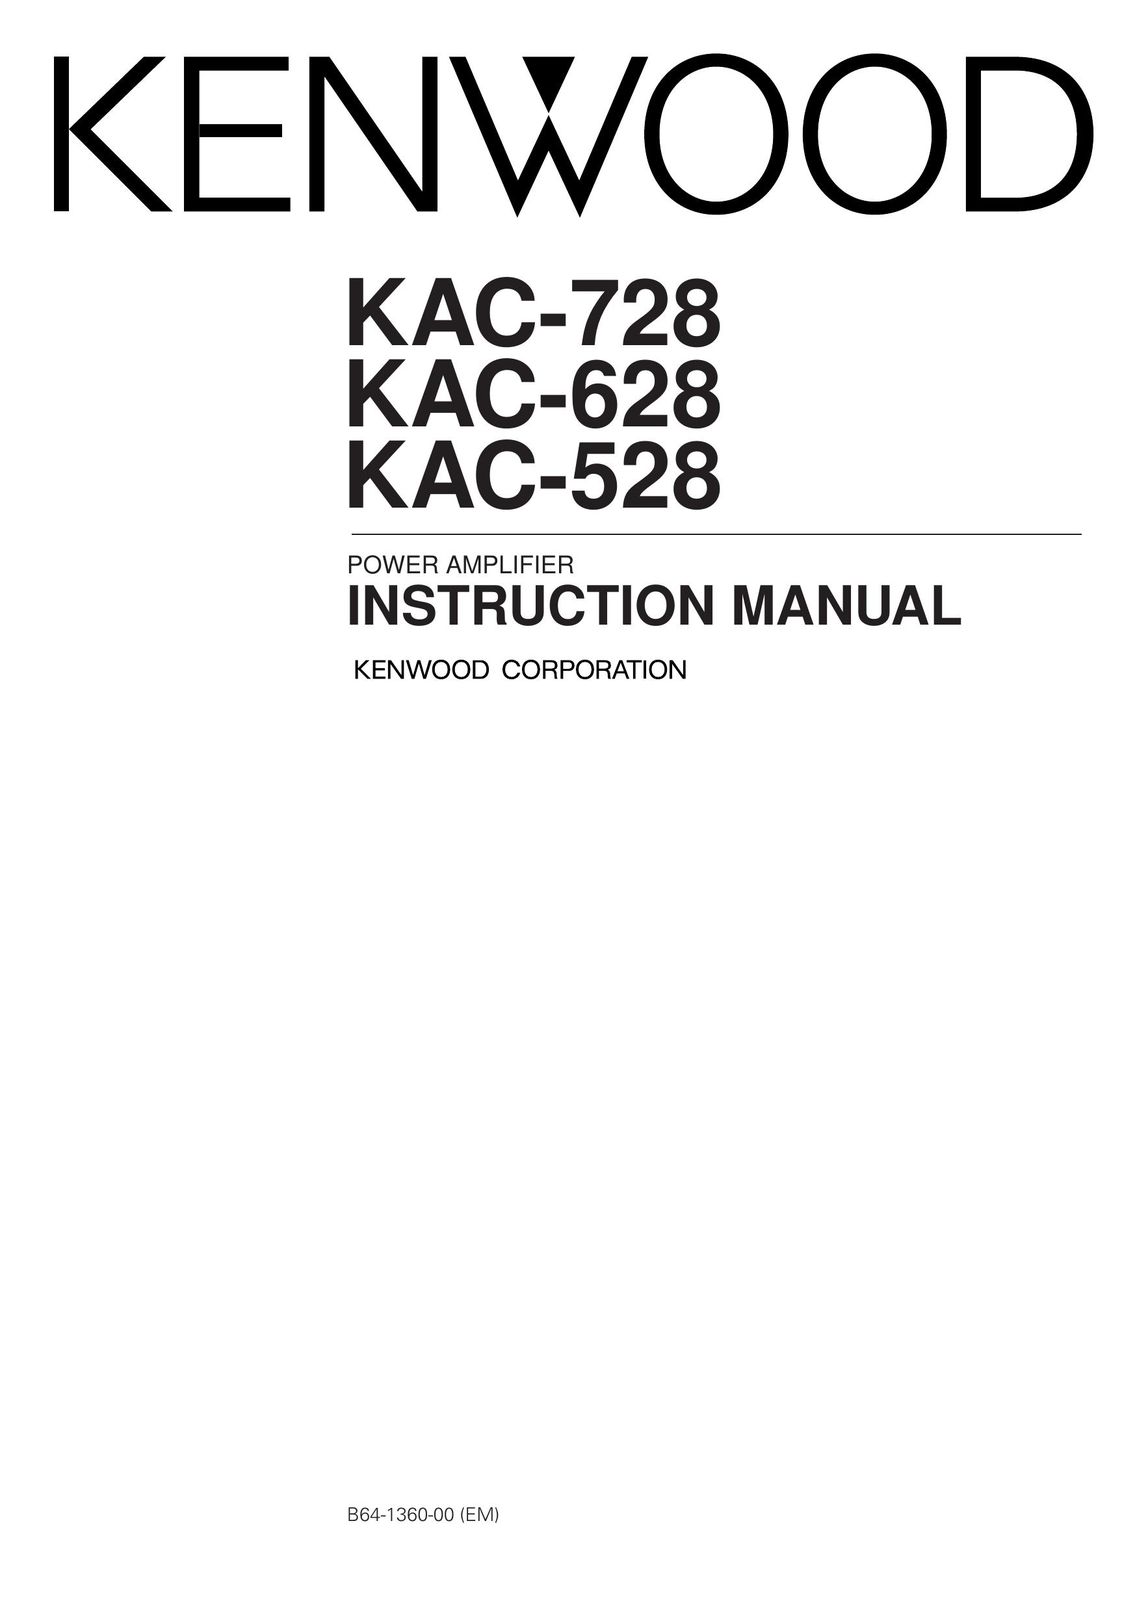 Kenwood KAC-528 Stereo Amplifier User Manual